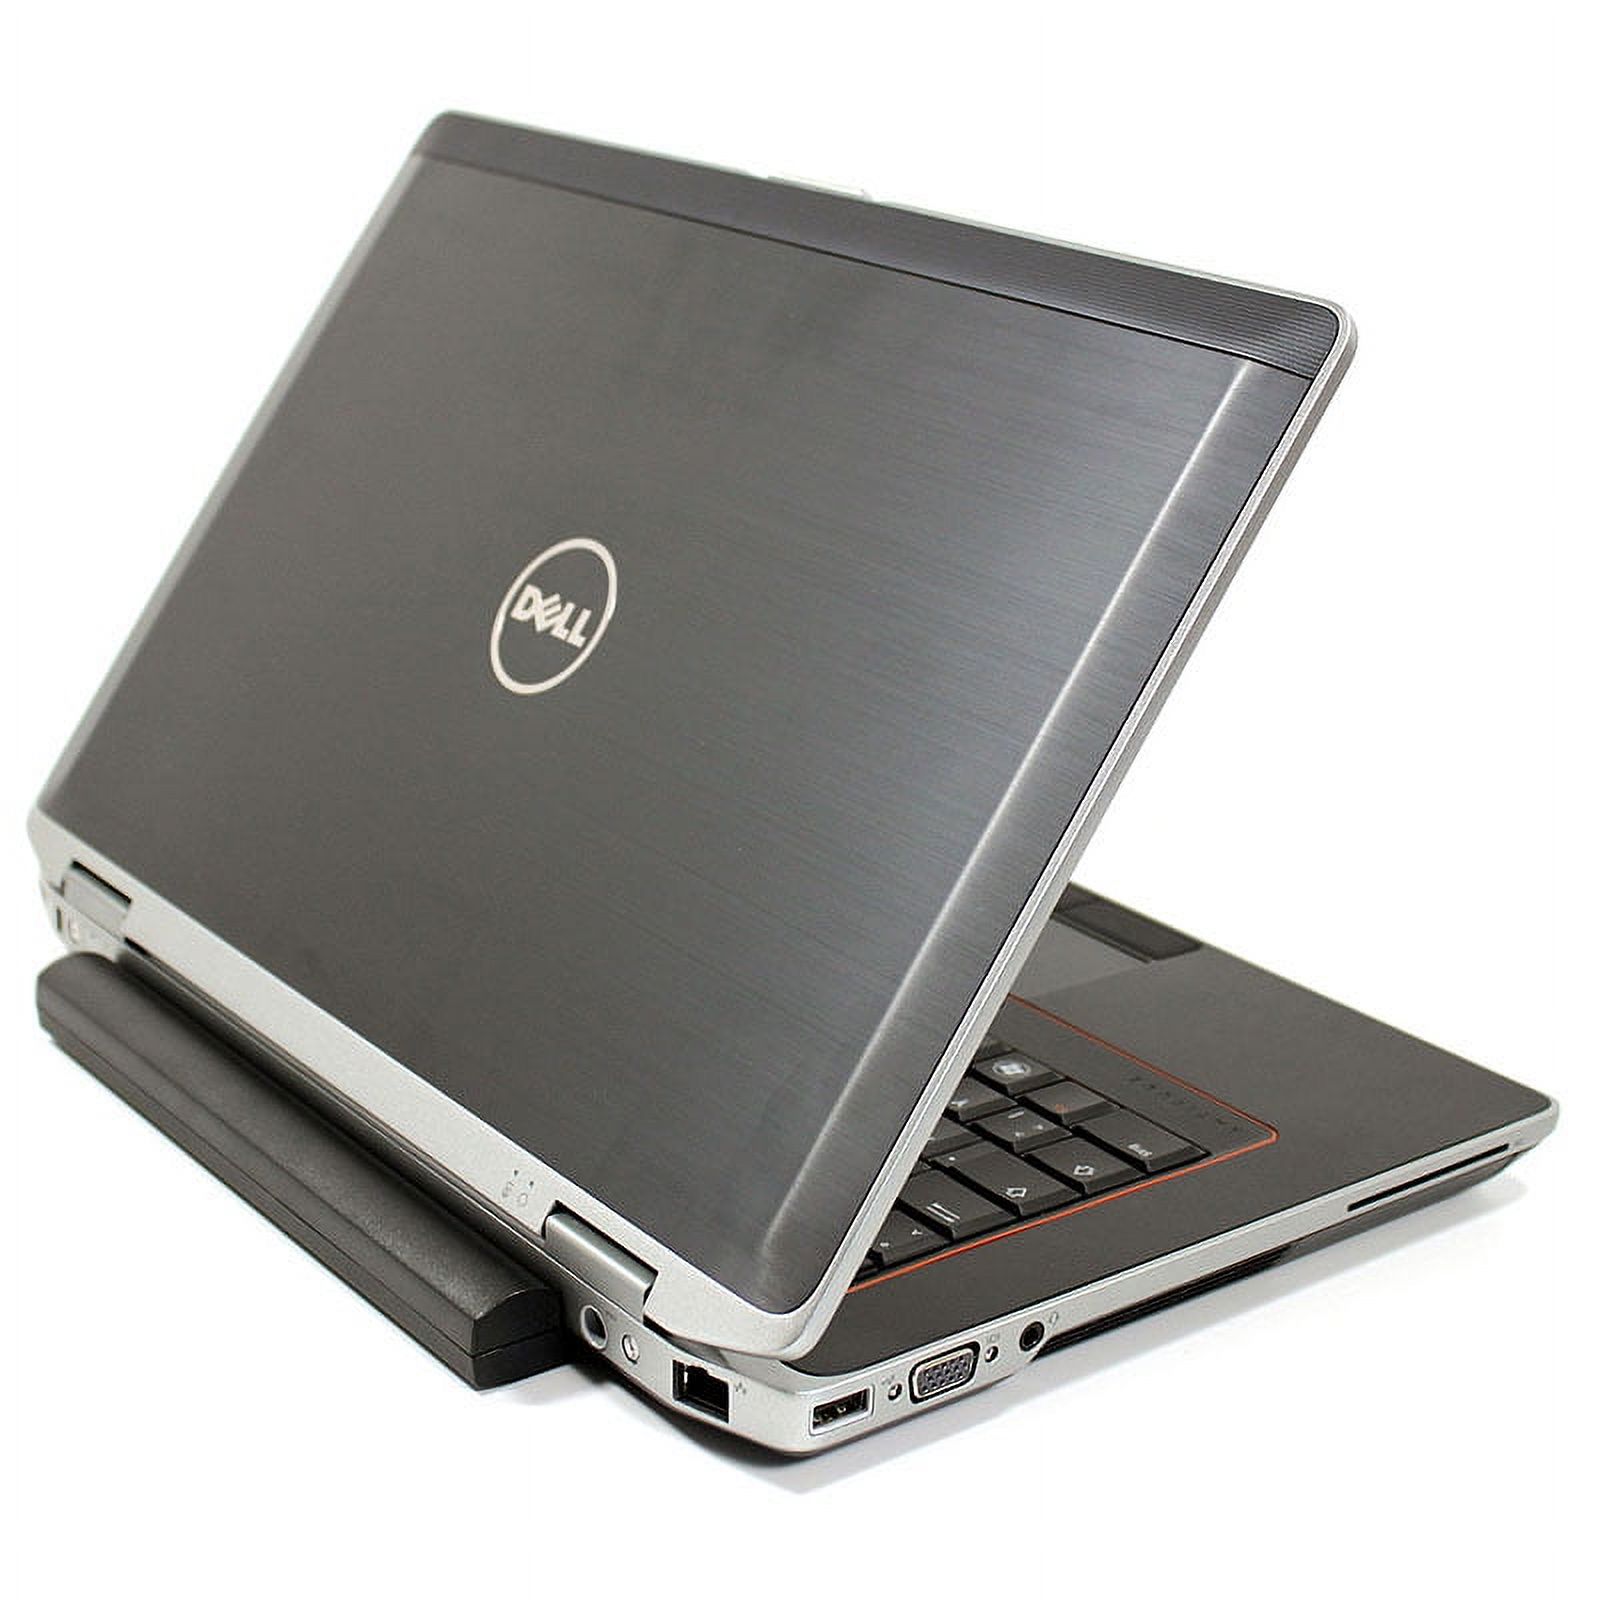 Used Dell Dell E6430 Laptop Intel i5 Dual Core Gen 3 4GB RAM 250GB SATA Windows 10 Professional 64 Bit - image 2 of 4